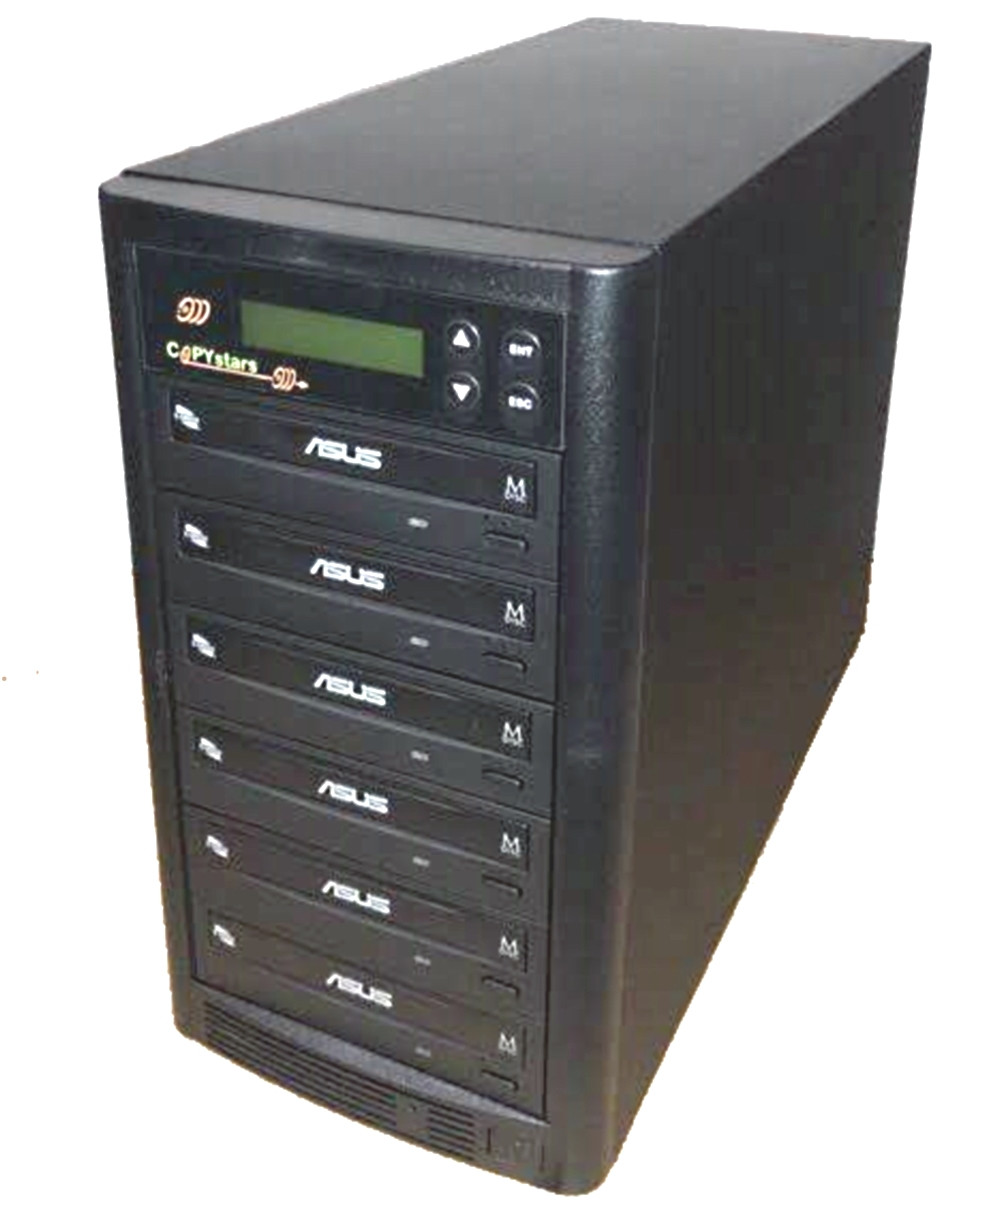 Copystars 1TB Hard drive Smart+USB 6 Burners SATA CD DVD Duplicator copier